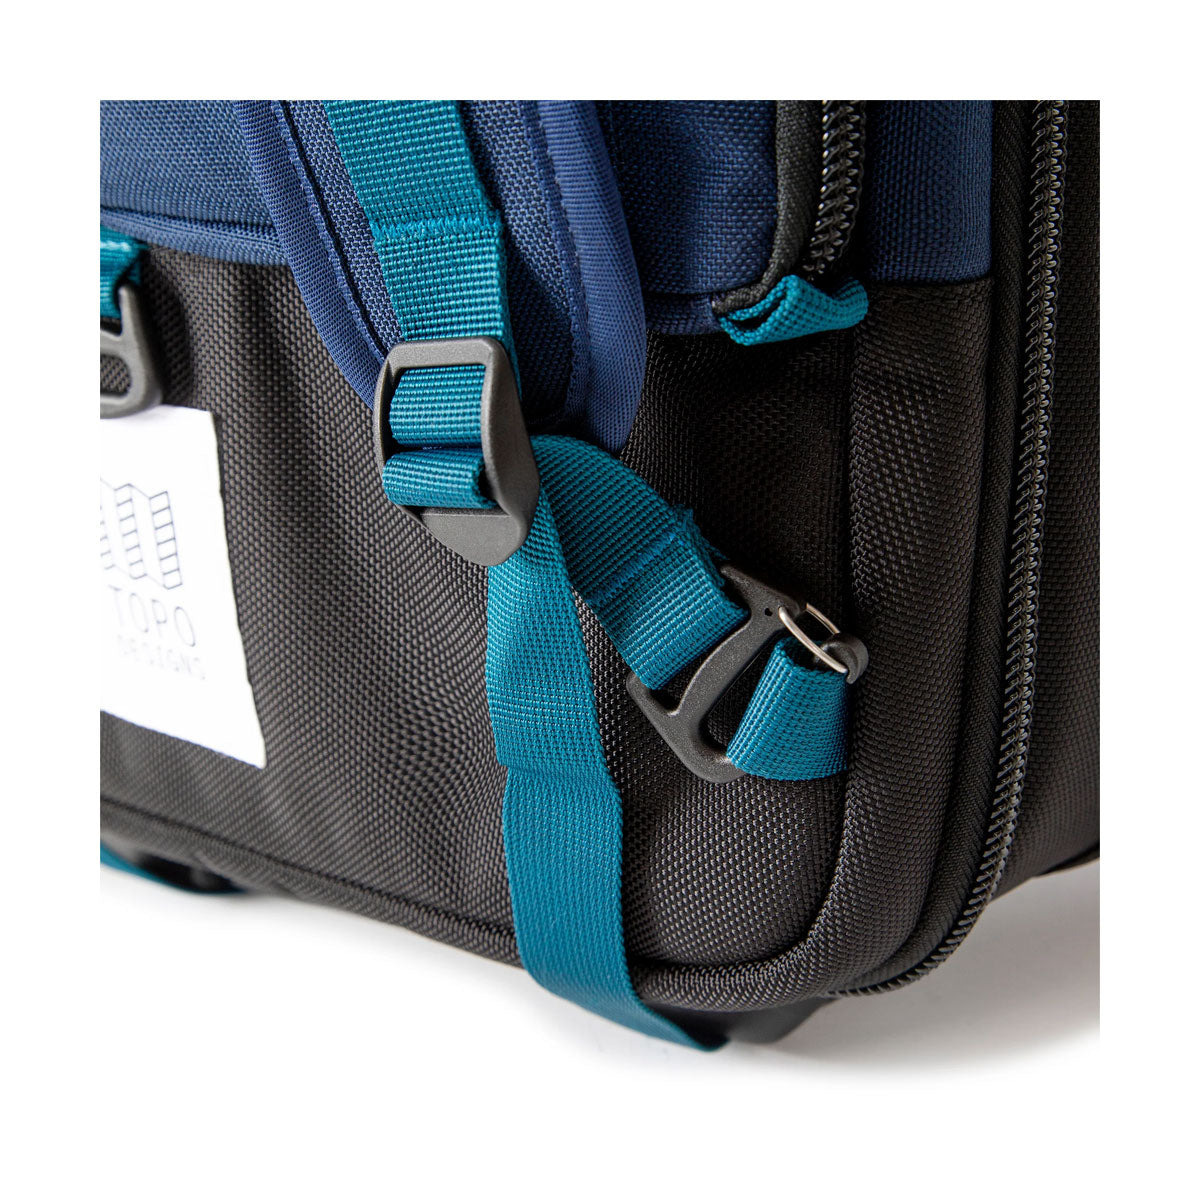 Topo Designs : Global Travel Bag Roller 44L : Olive/Olive